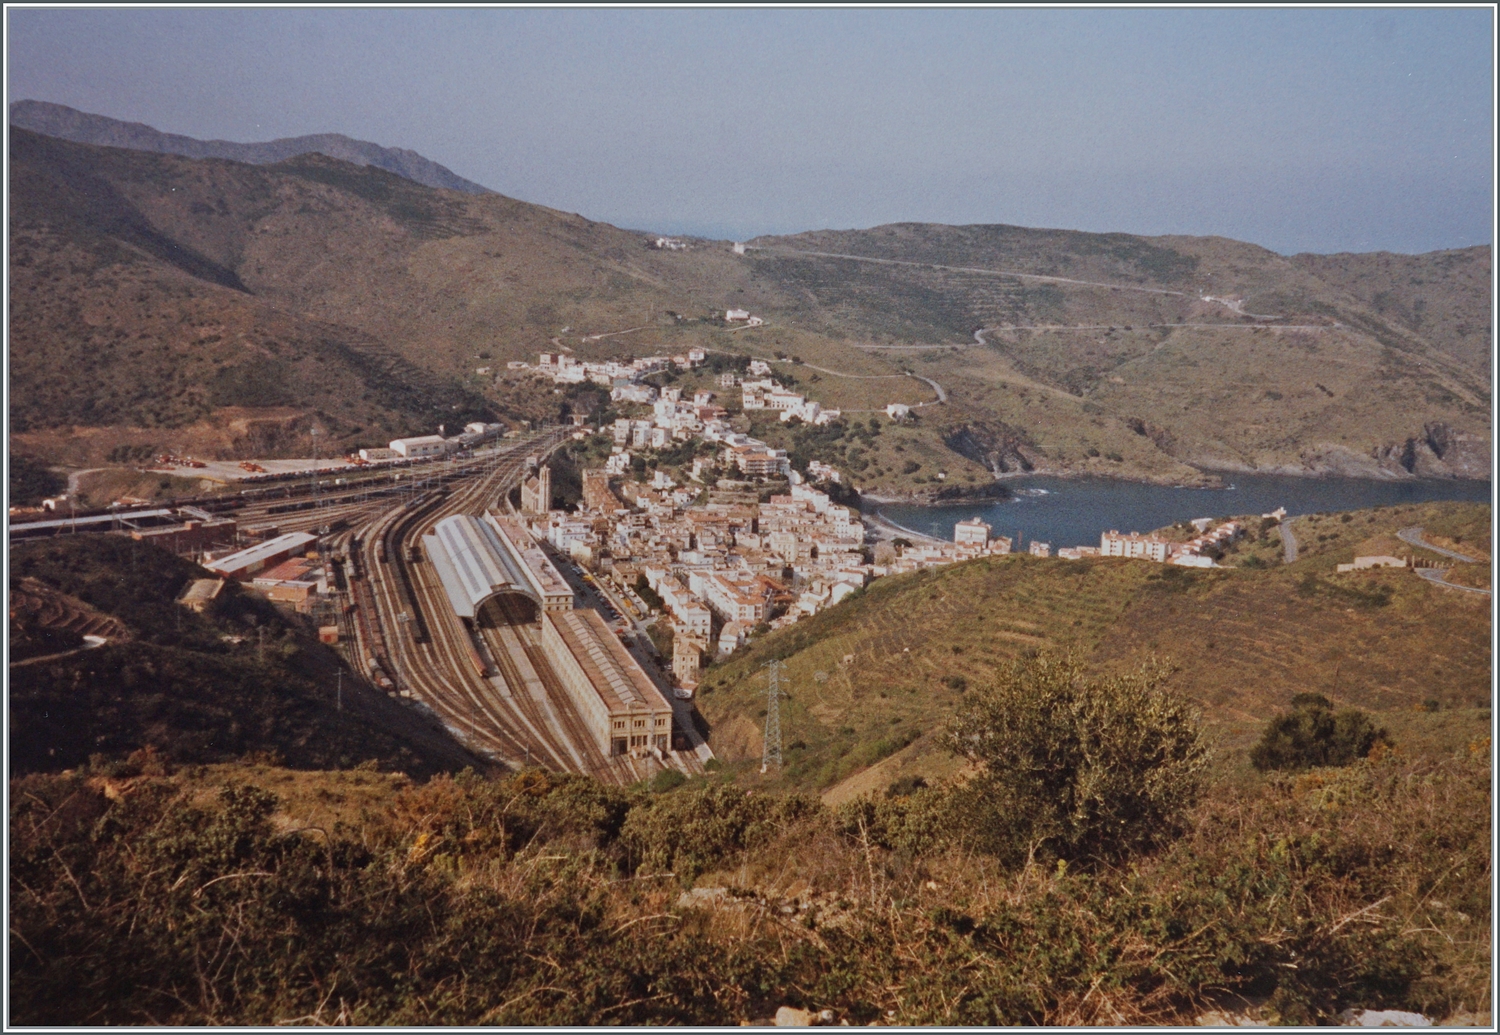 Blick auf den Grenzbahnhof Port-Bou. Hier endet die von Frankreich kommende Normalspur und beginnt die spanischen Breitspur. 

Analogbild vom März 1992 